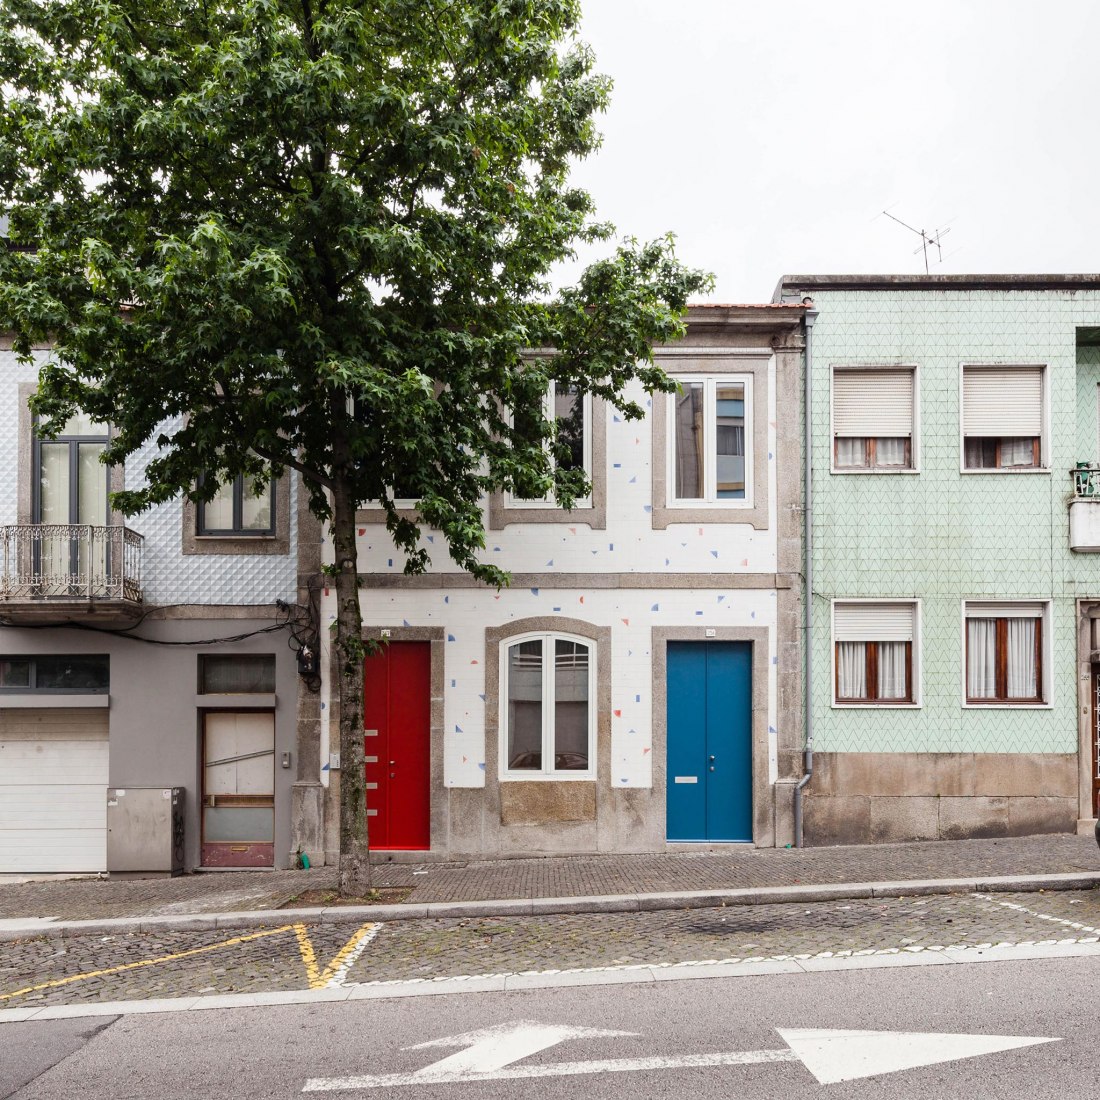 Exterior frontal view. House in Rua Faris Guimarães. Photograph © Ricardo Loureiro.